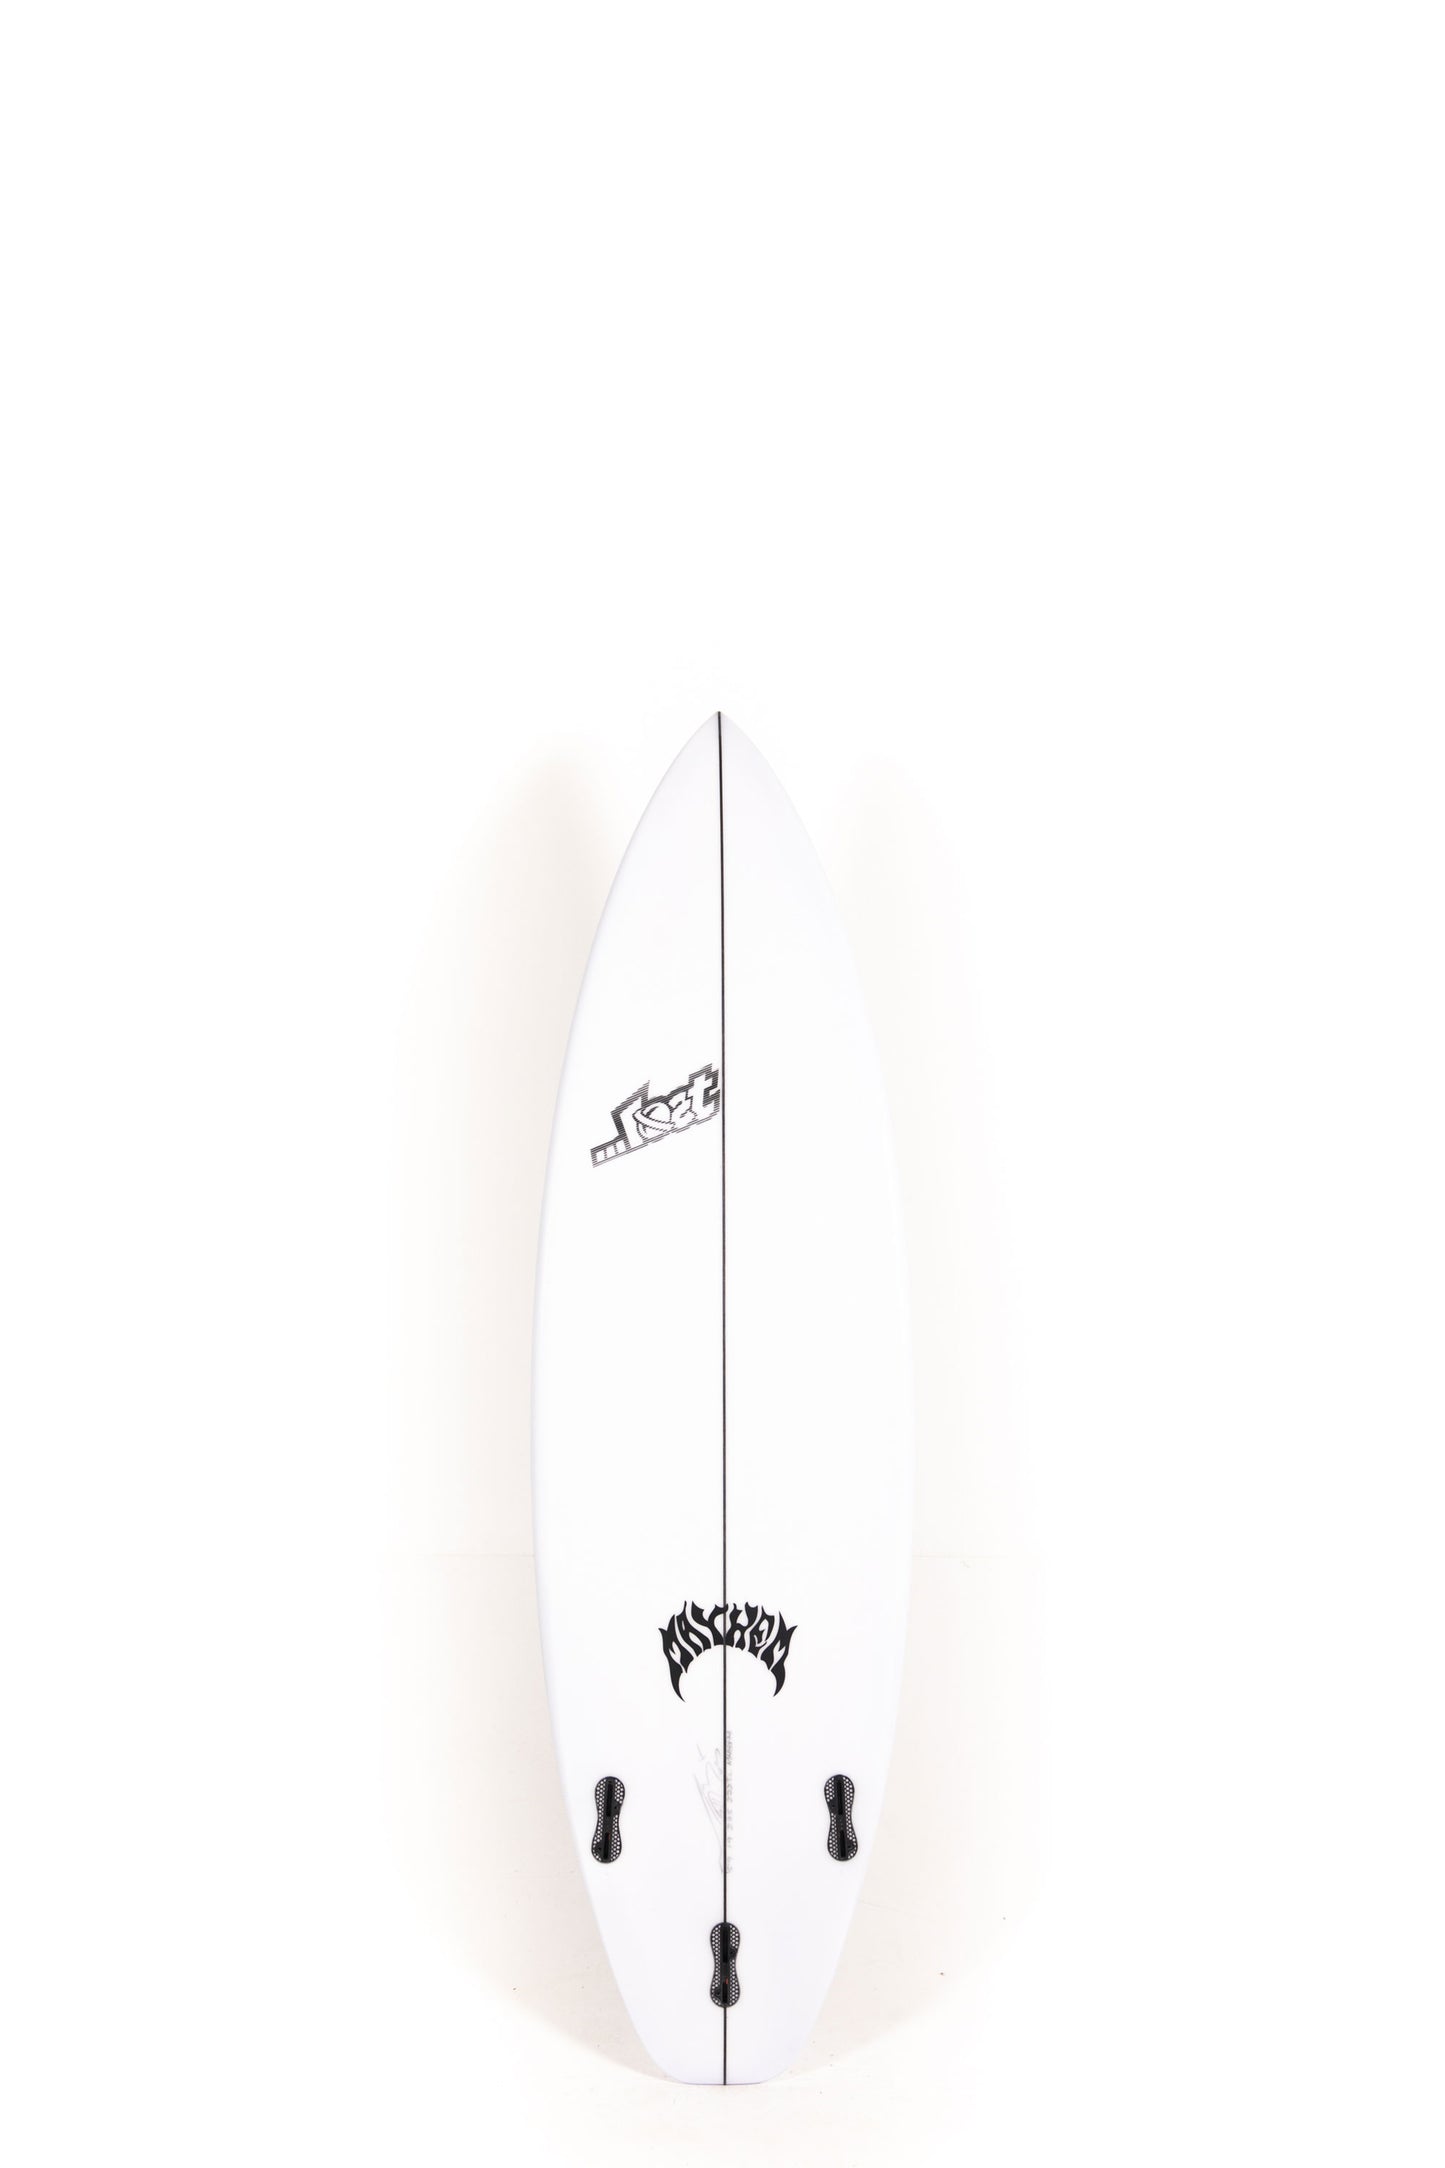 Pukas Surf Shop - Lost Surfboard - 3.0_STUB DRIVER by Matt Biolos - 5’9” x 19" x 2.35" - 27.25L - MH18874